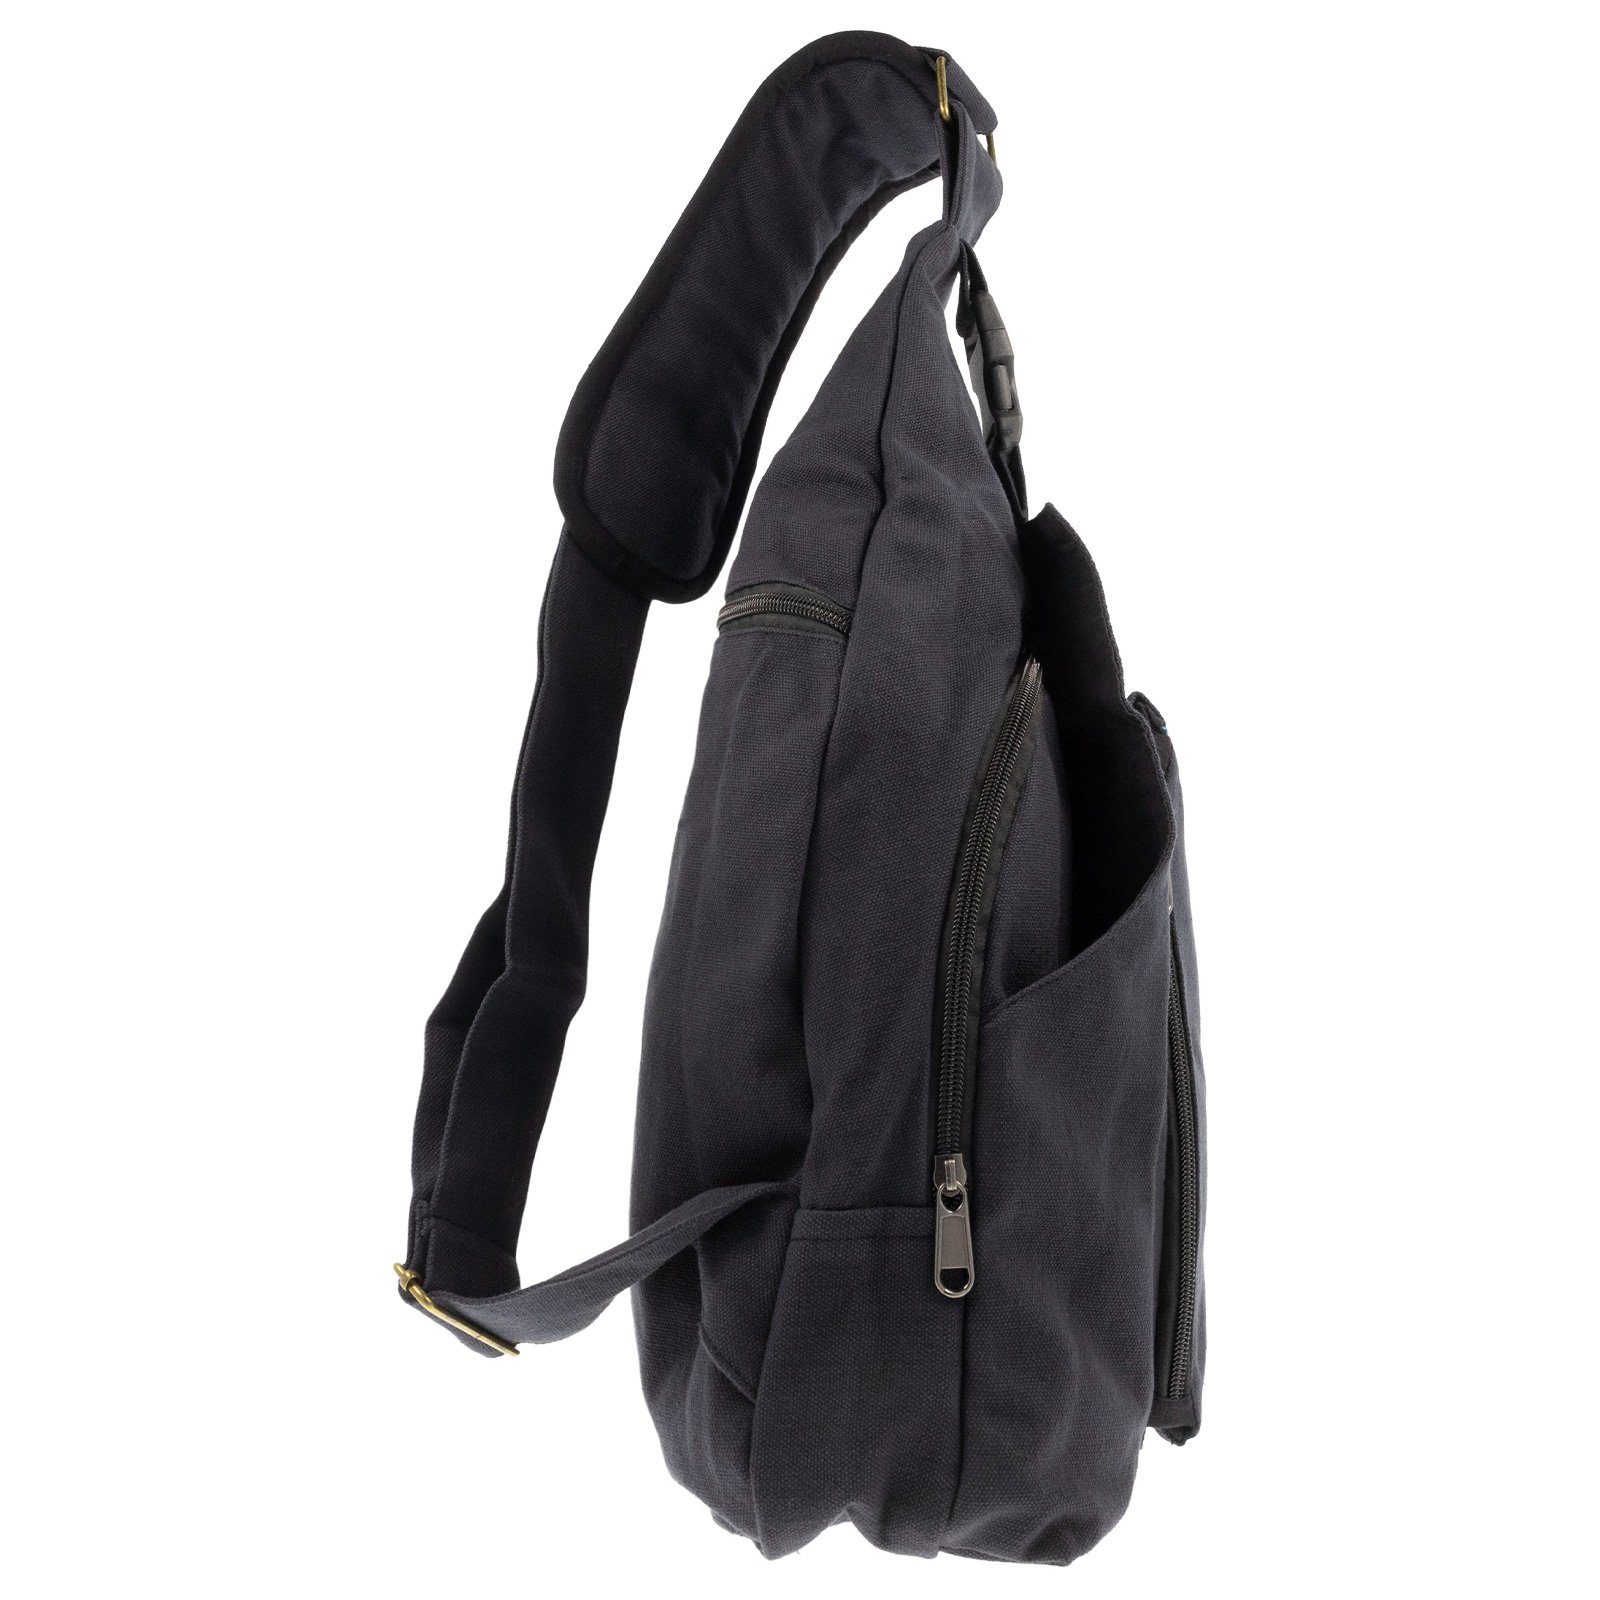 OM MAGIE KUNST Sling Bodybag Rucksack Hippie Schwarz Symbol Türkis Bag / Schultertasche Schultertasche L UND